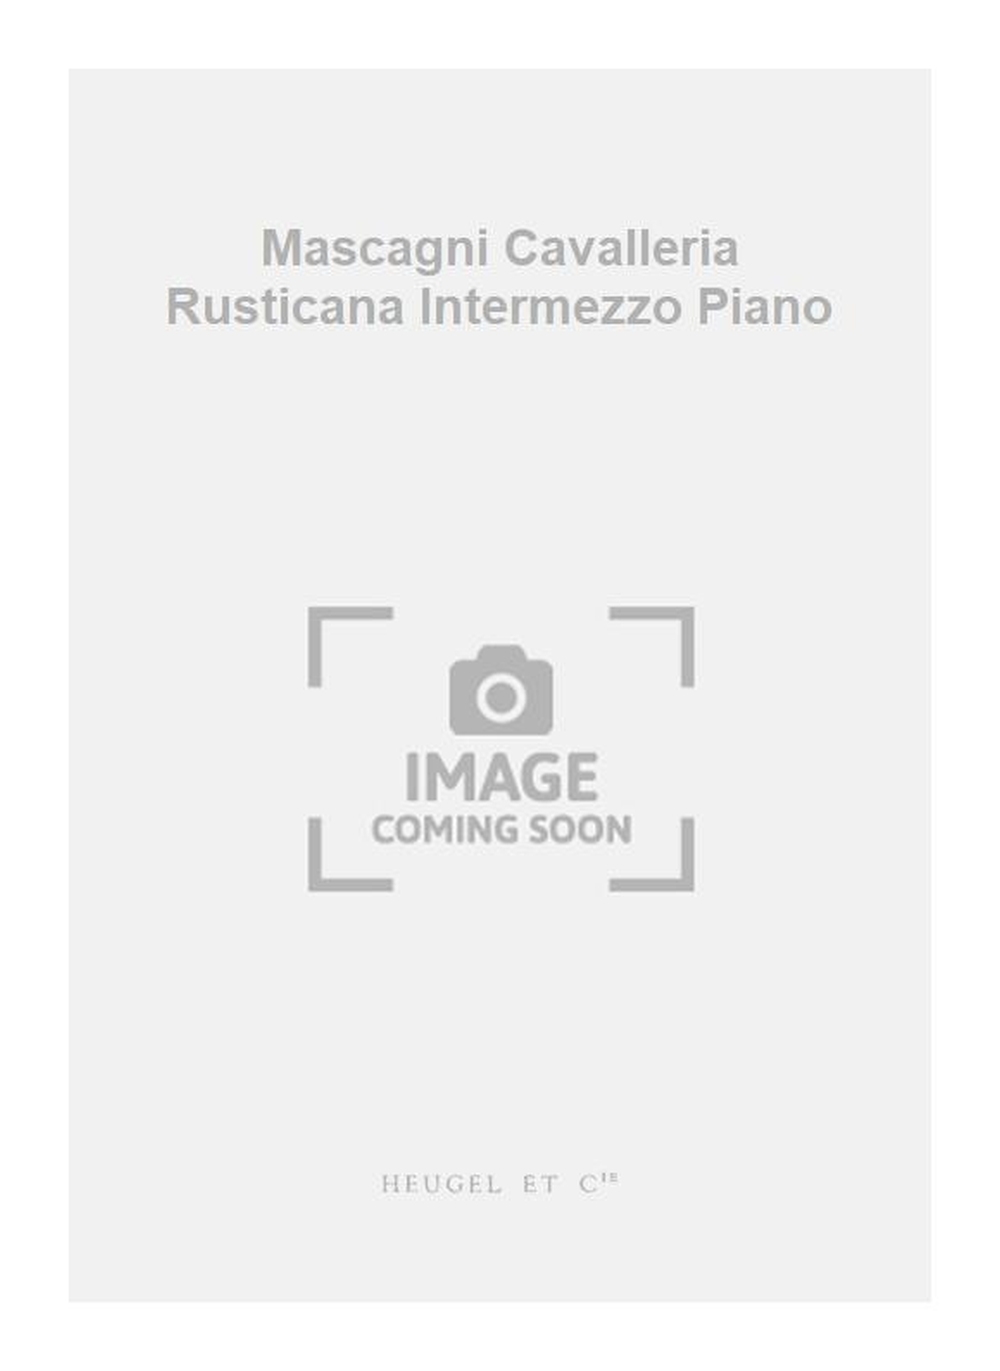 Pietro Mascagni: Mascagni Cavalleria Rusticana Intermezzo Piano